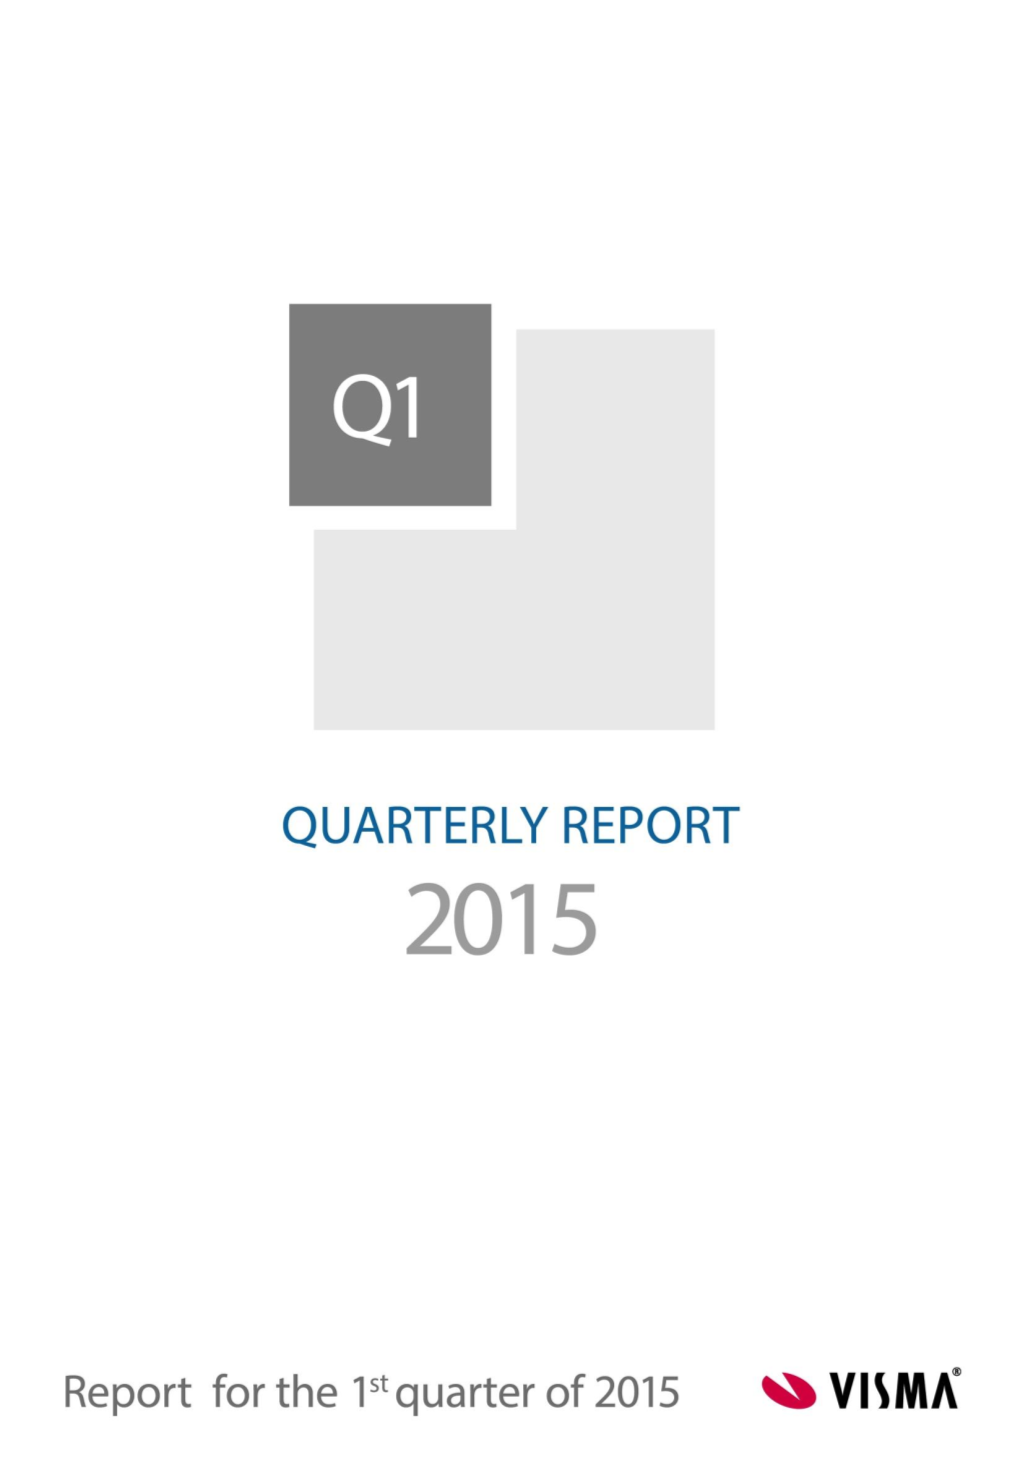 Visma Q1 Report, 2015